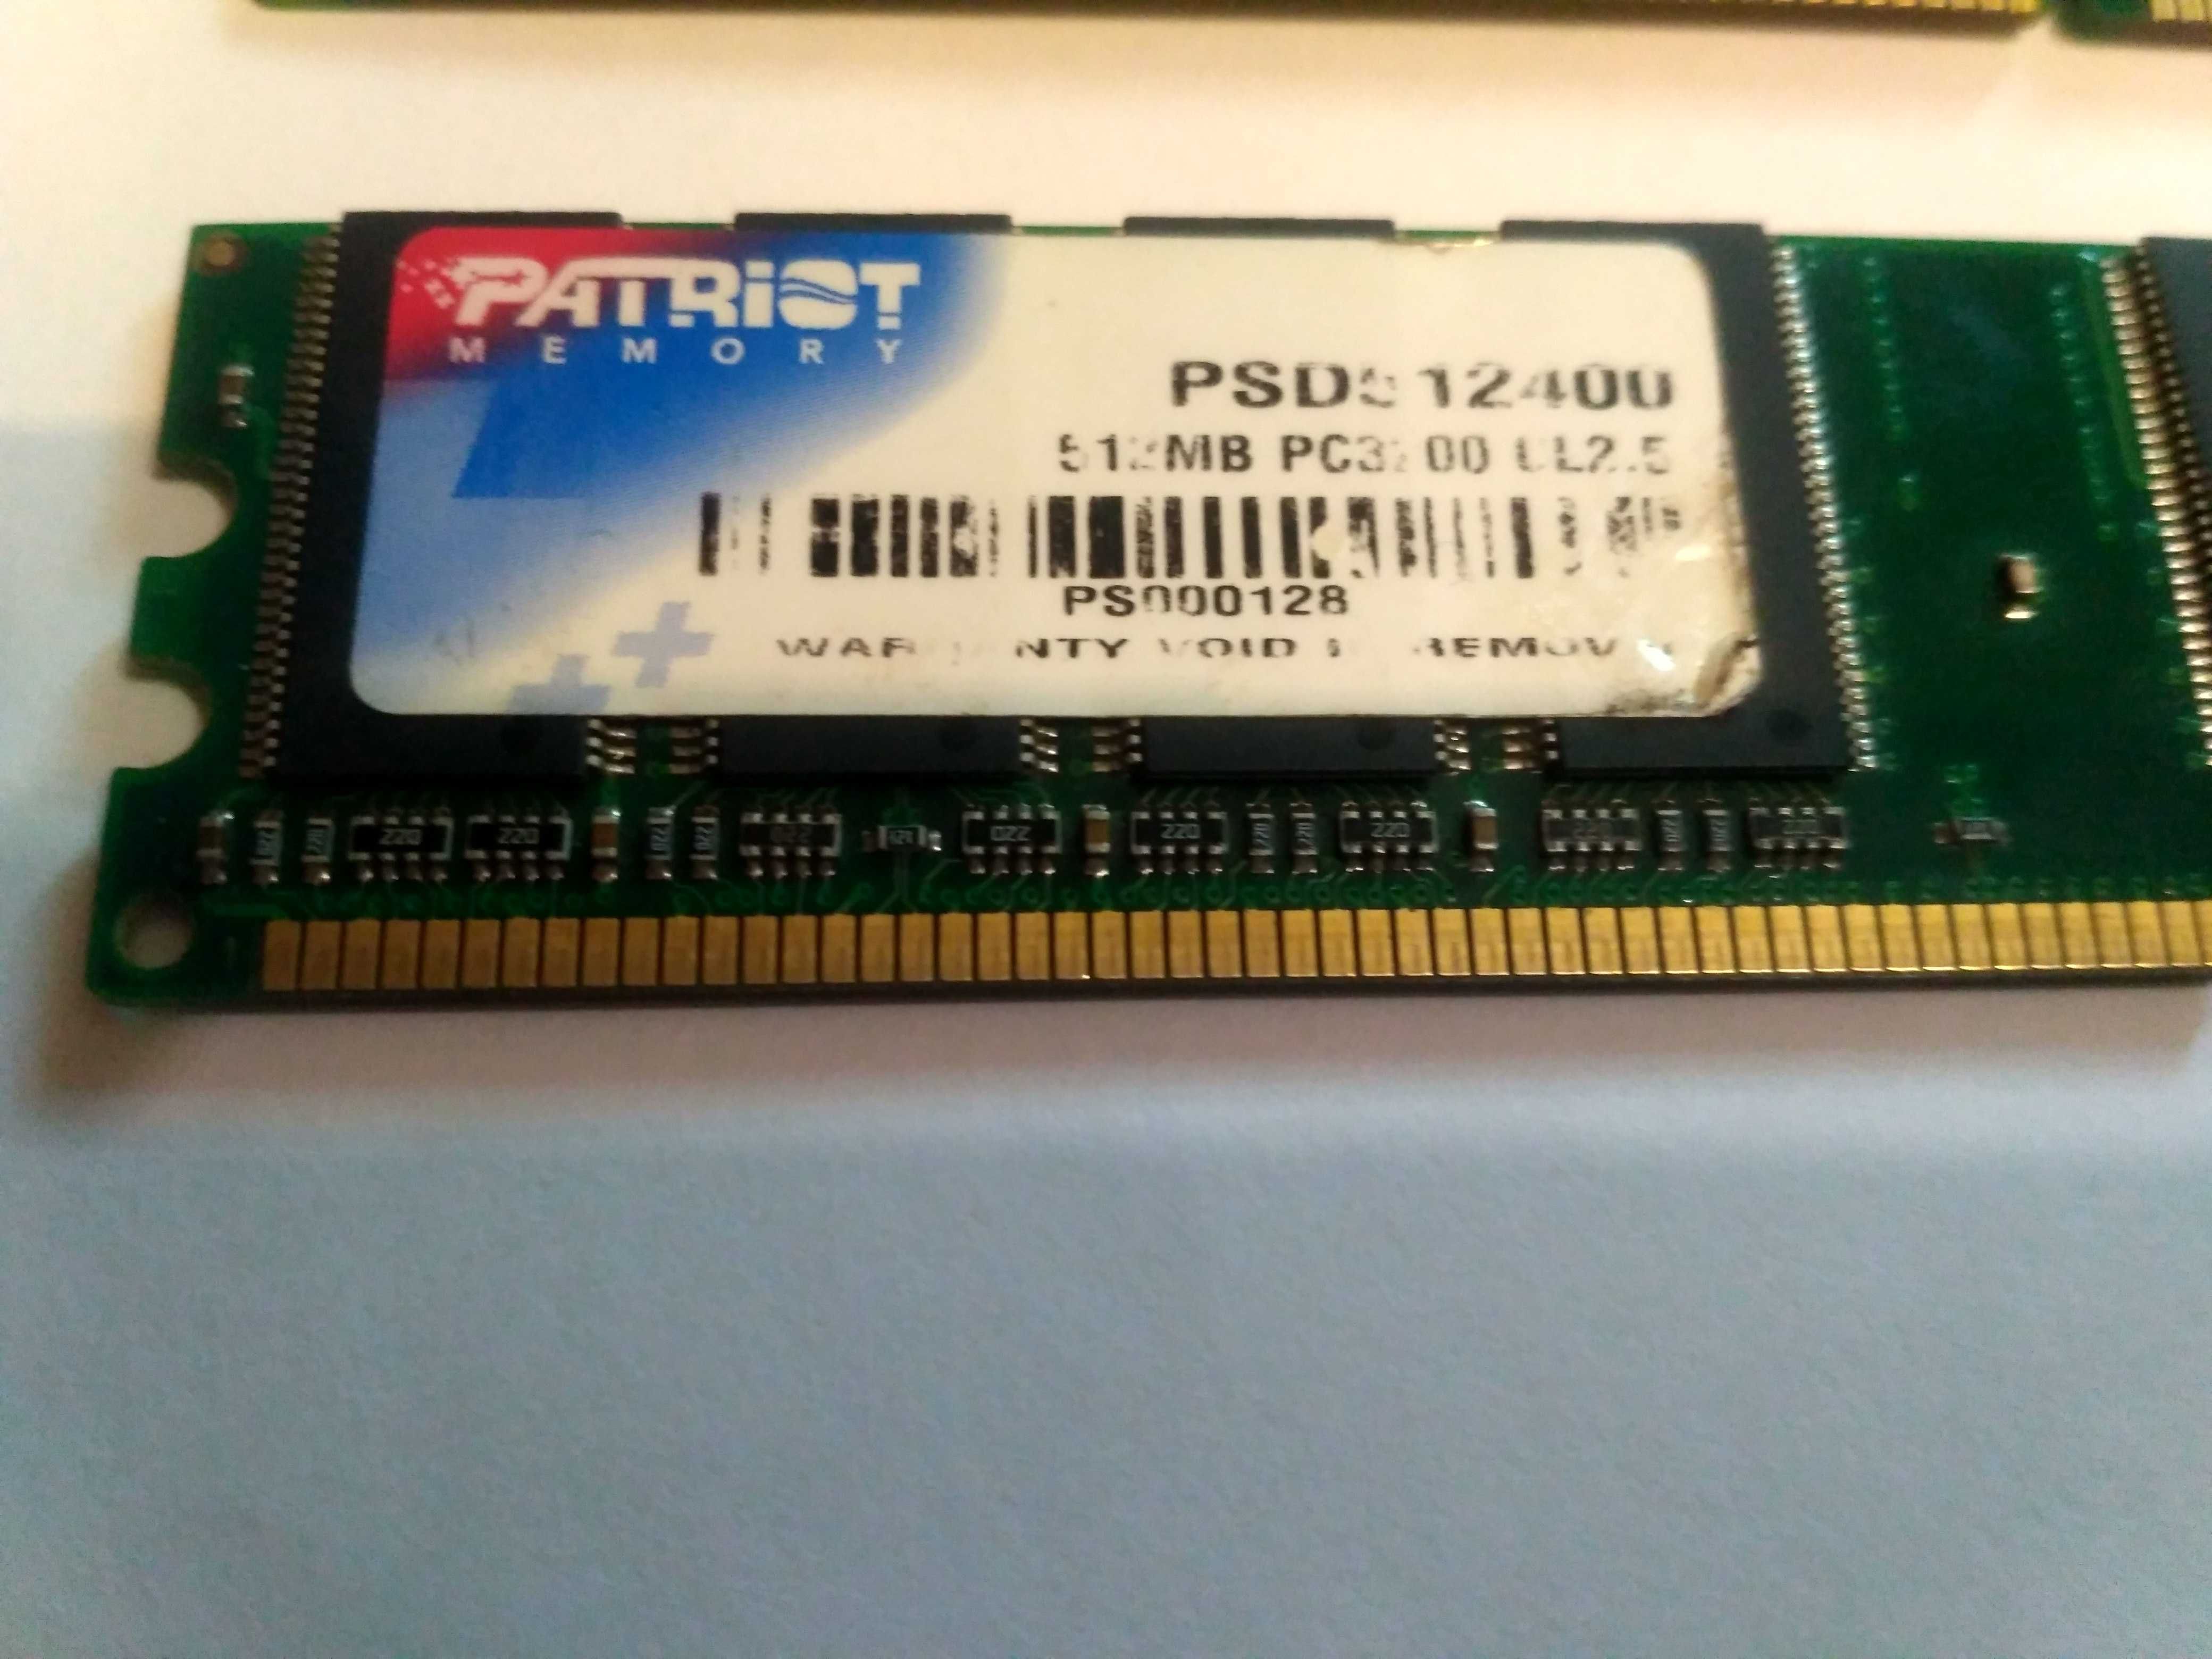 DDR-400 1 Gb PC3200U Hynix + PATRIOT на 512 Mb